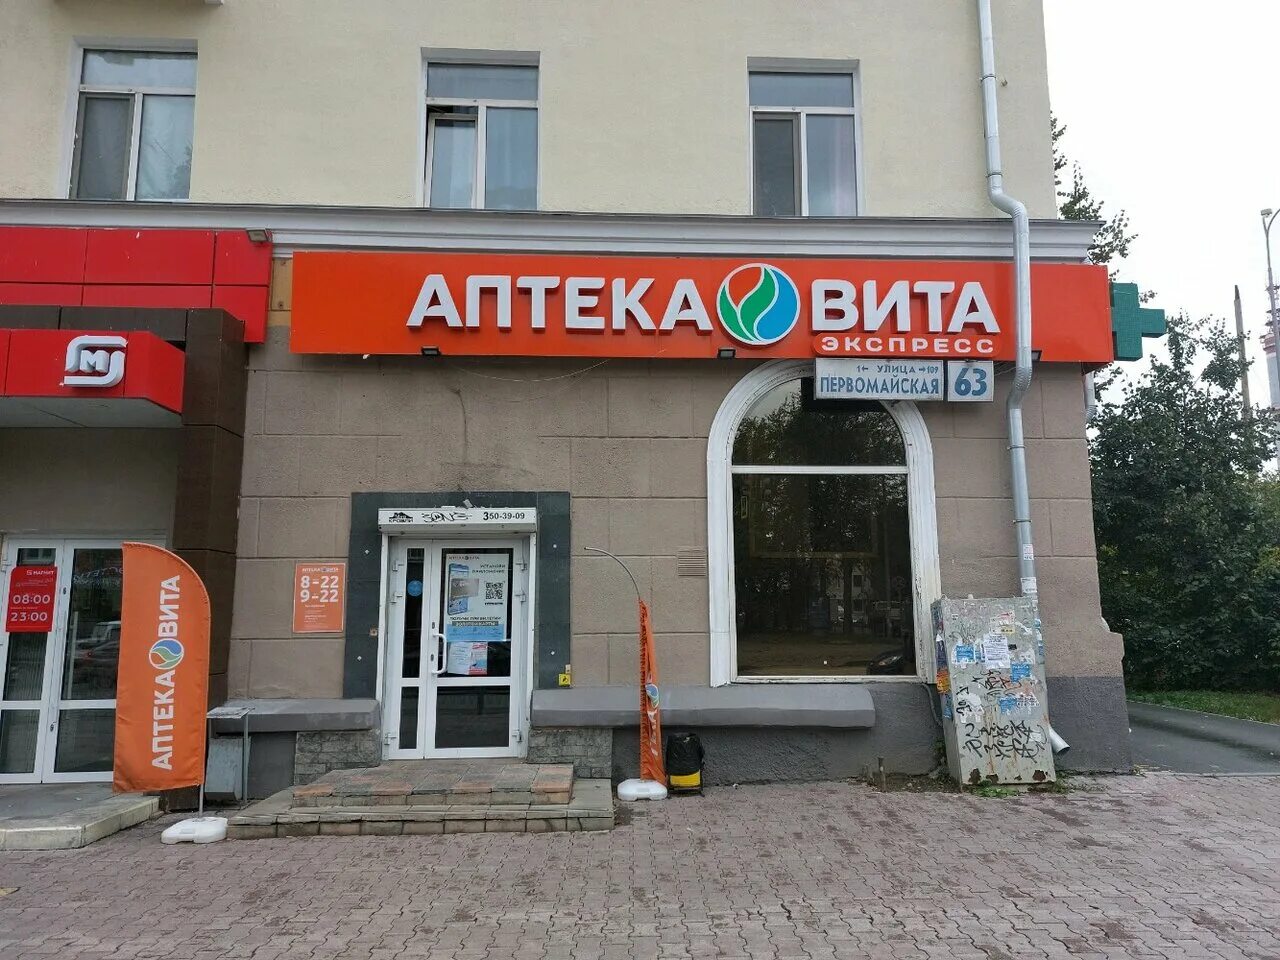 Аптека Екатеринбург экспресс.